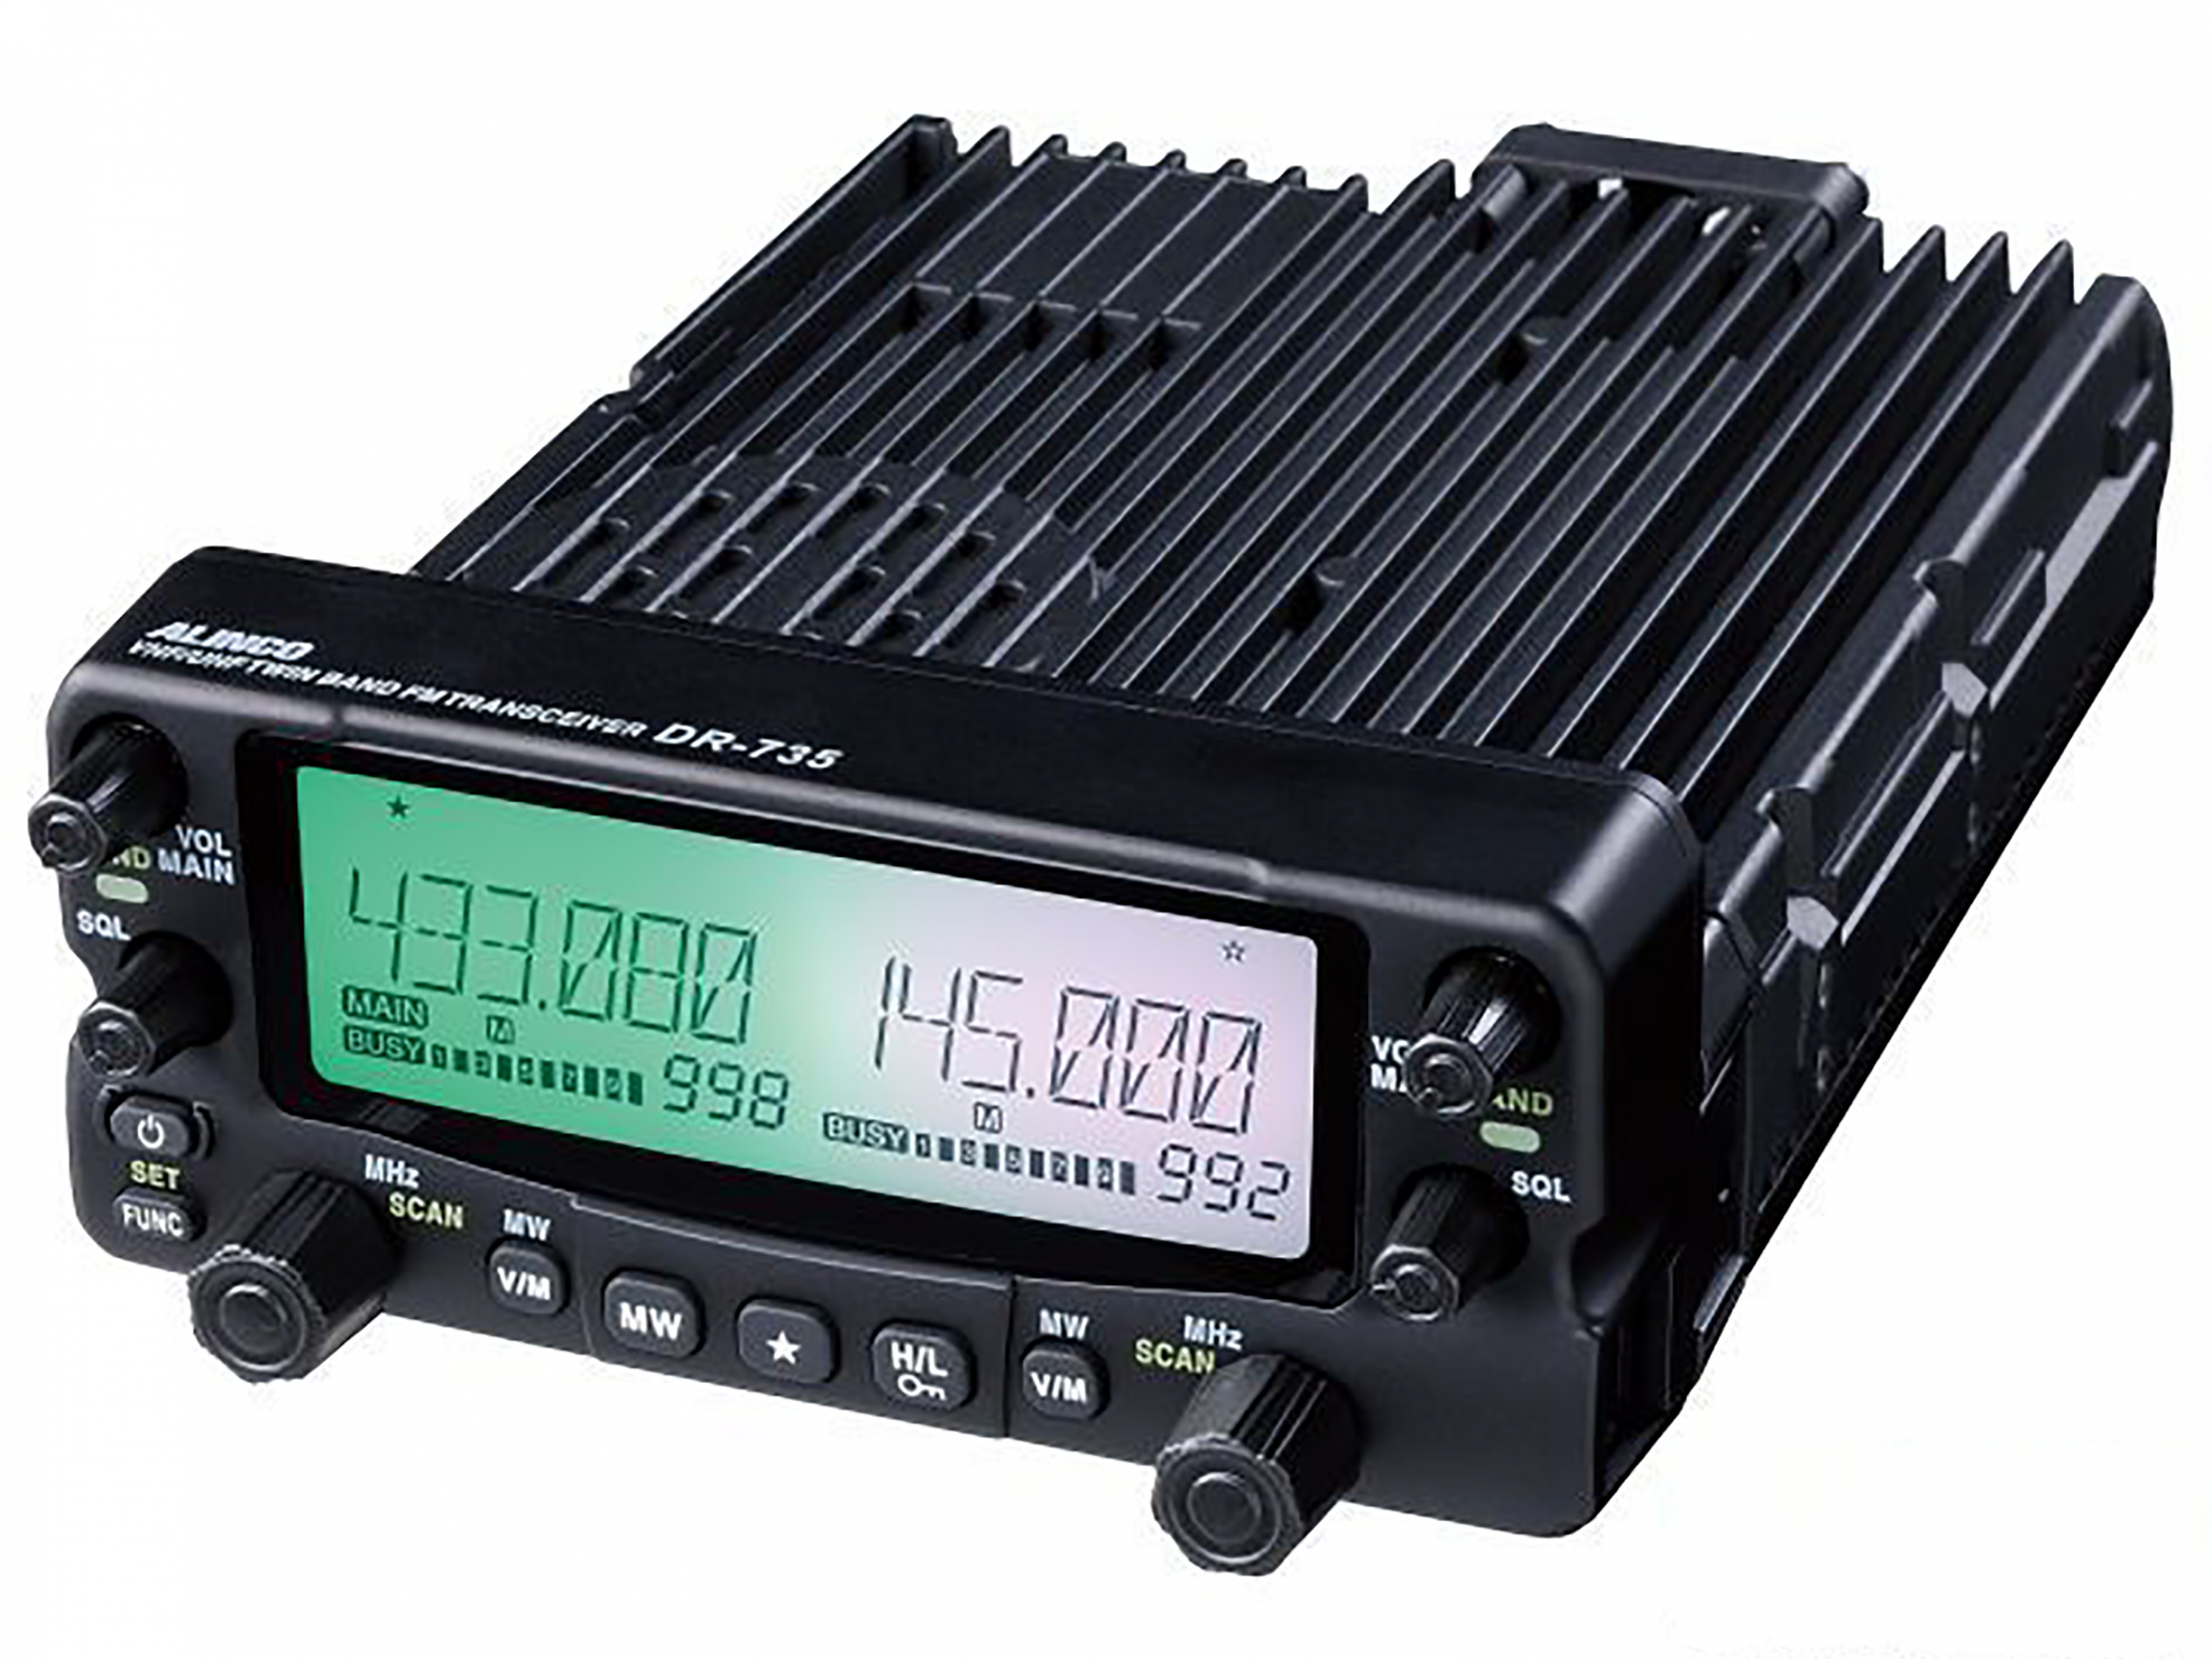 Alinco DR-735E 145/433 MHz Dual Band Transceiver